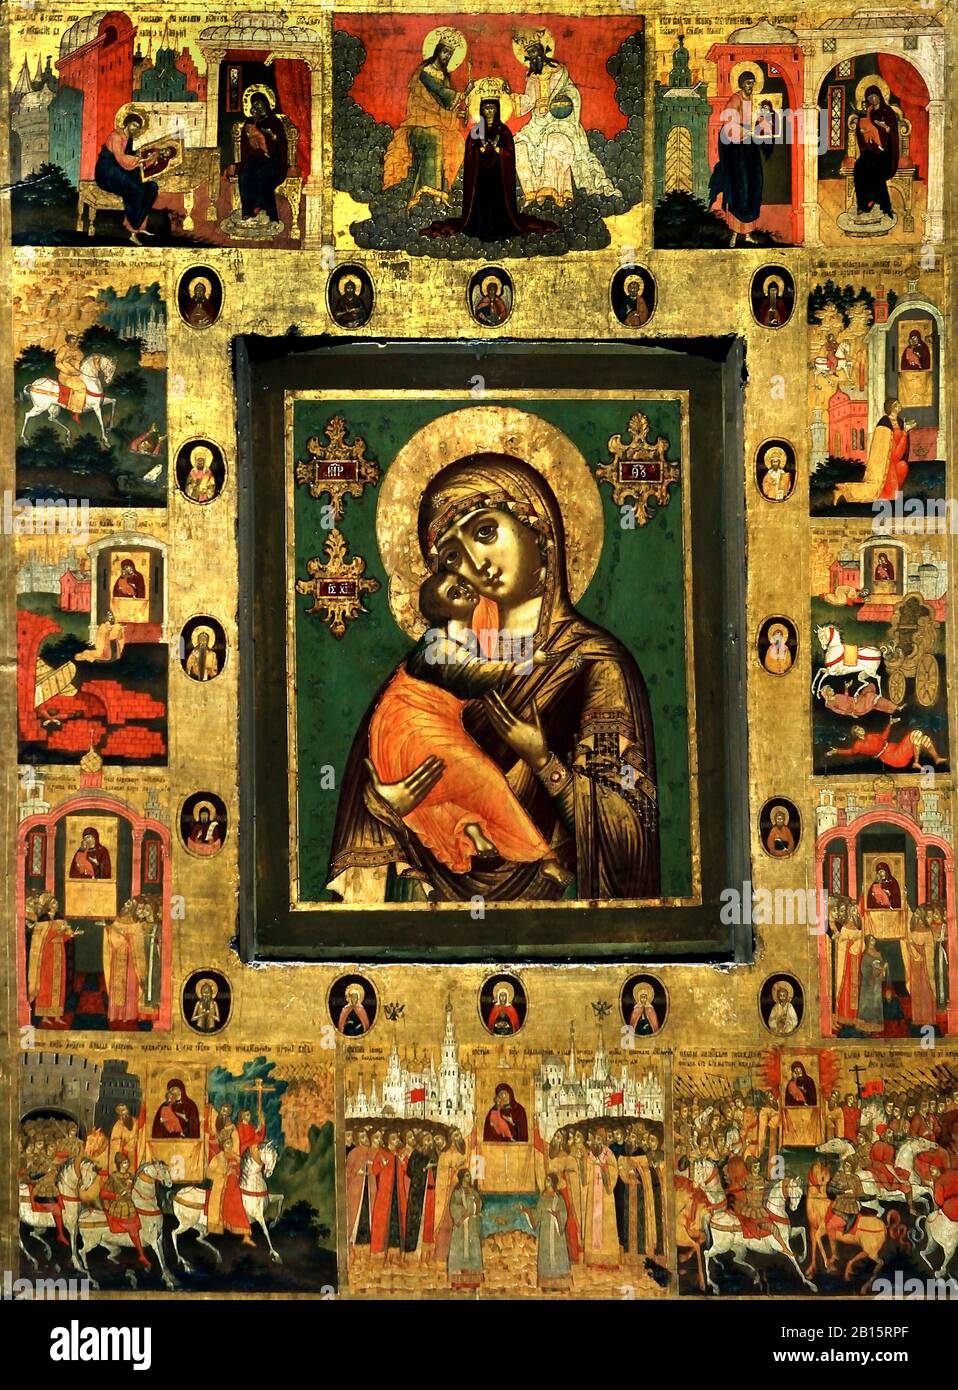 Ikone, die Mutter gottes von Wladimir, mit Ausgewählten Heiligen und Grenzszenen, Die Wunder darstellen.Russland, Russland, Russland, Föderation, Stockfoto